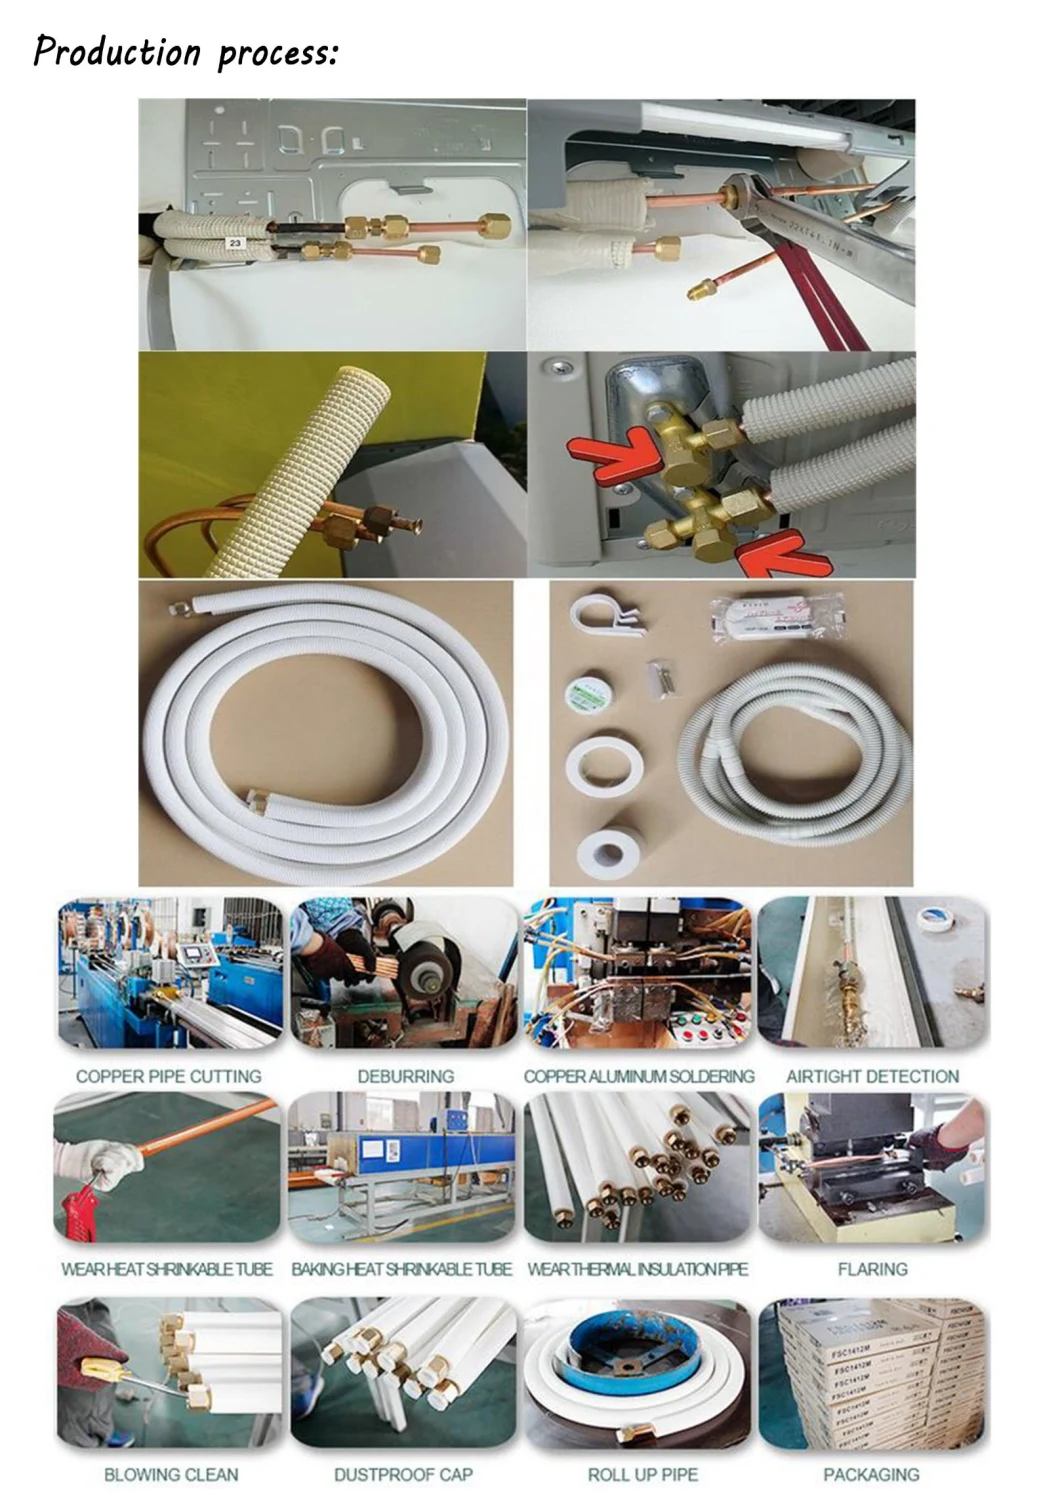 Split Air Conditioner Copper-Aluminum Connecting Pipe, Insulation Tube